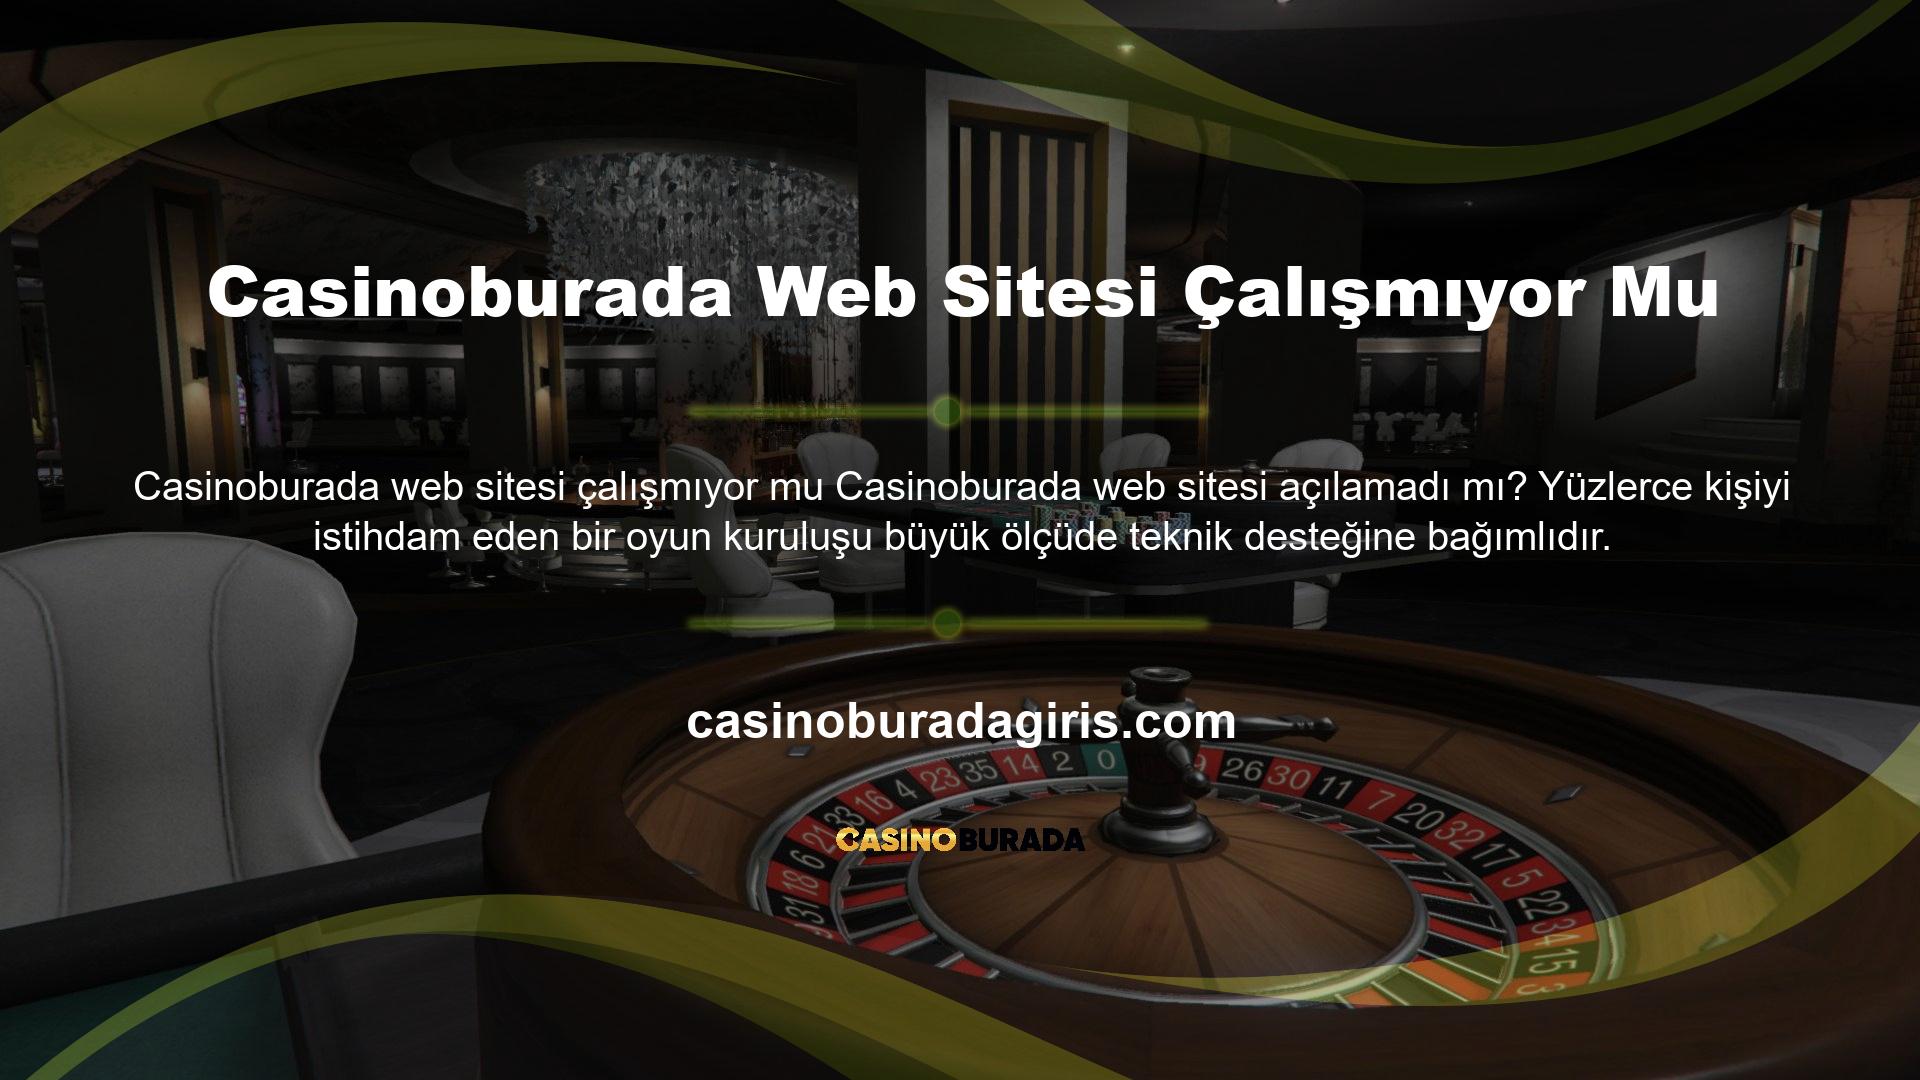 İSS'niz veya İSS'niz beklenmedik bir şekilde kapanmadığı sürece Casinoburada web sitesi hizmet vermeye devam edecektir